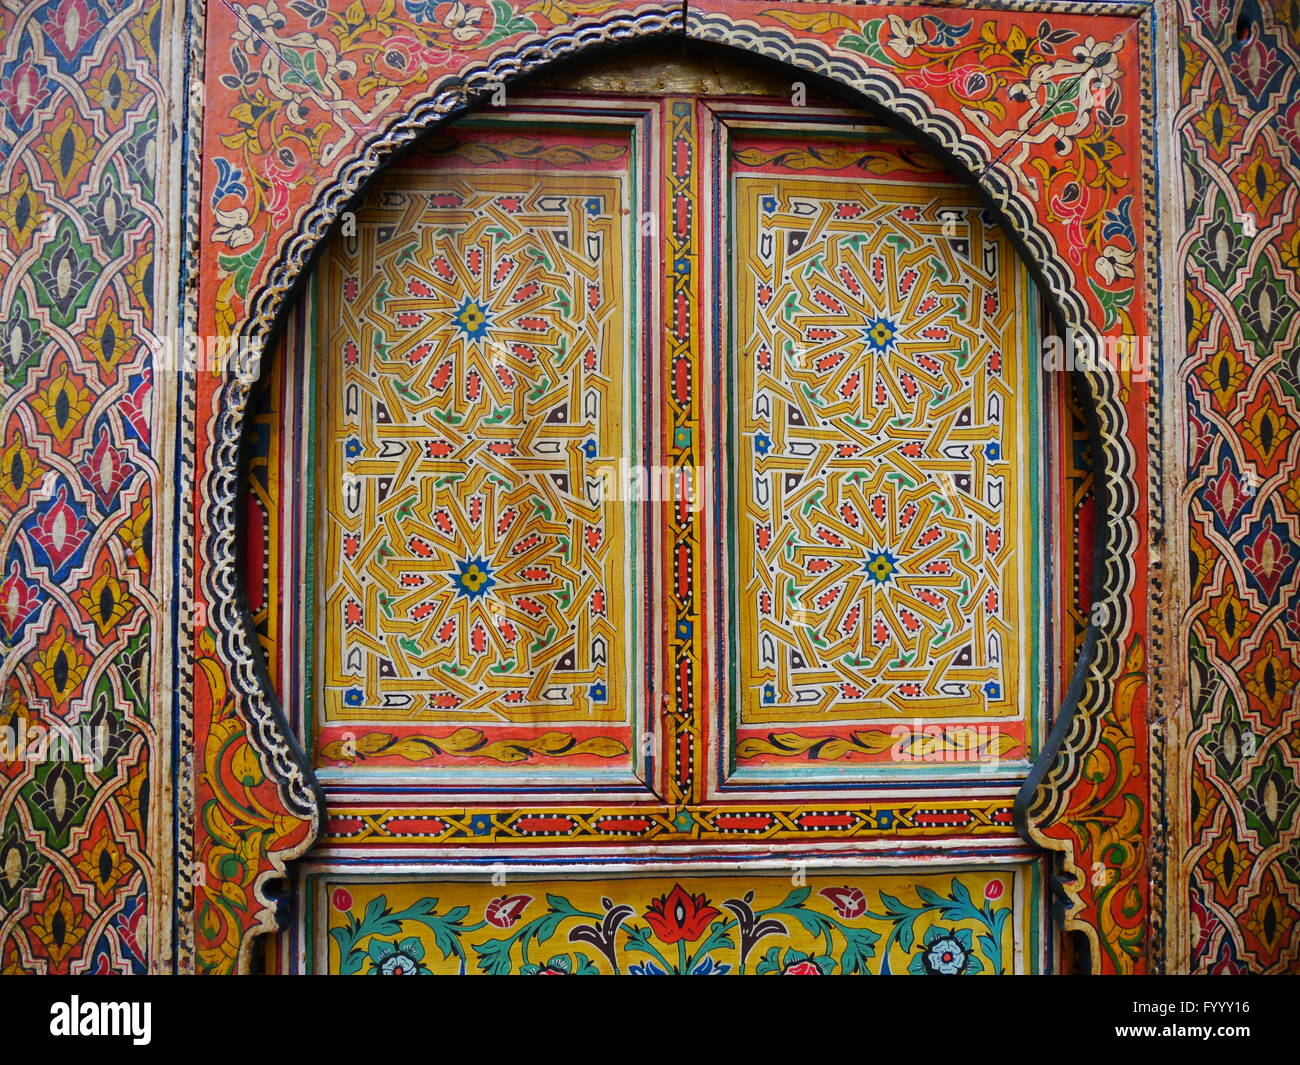 De façon complexe, à motifs traditionnels, des portes peintes de couleurs vives à Fez, Maroc.Les motifs floraux sont en rouge, jaune, bleu, vert Banque D'Images